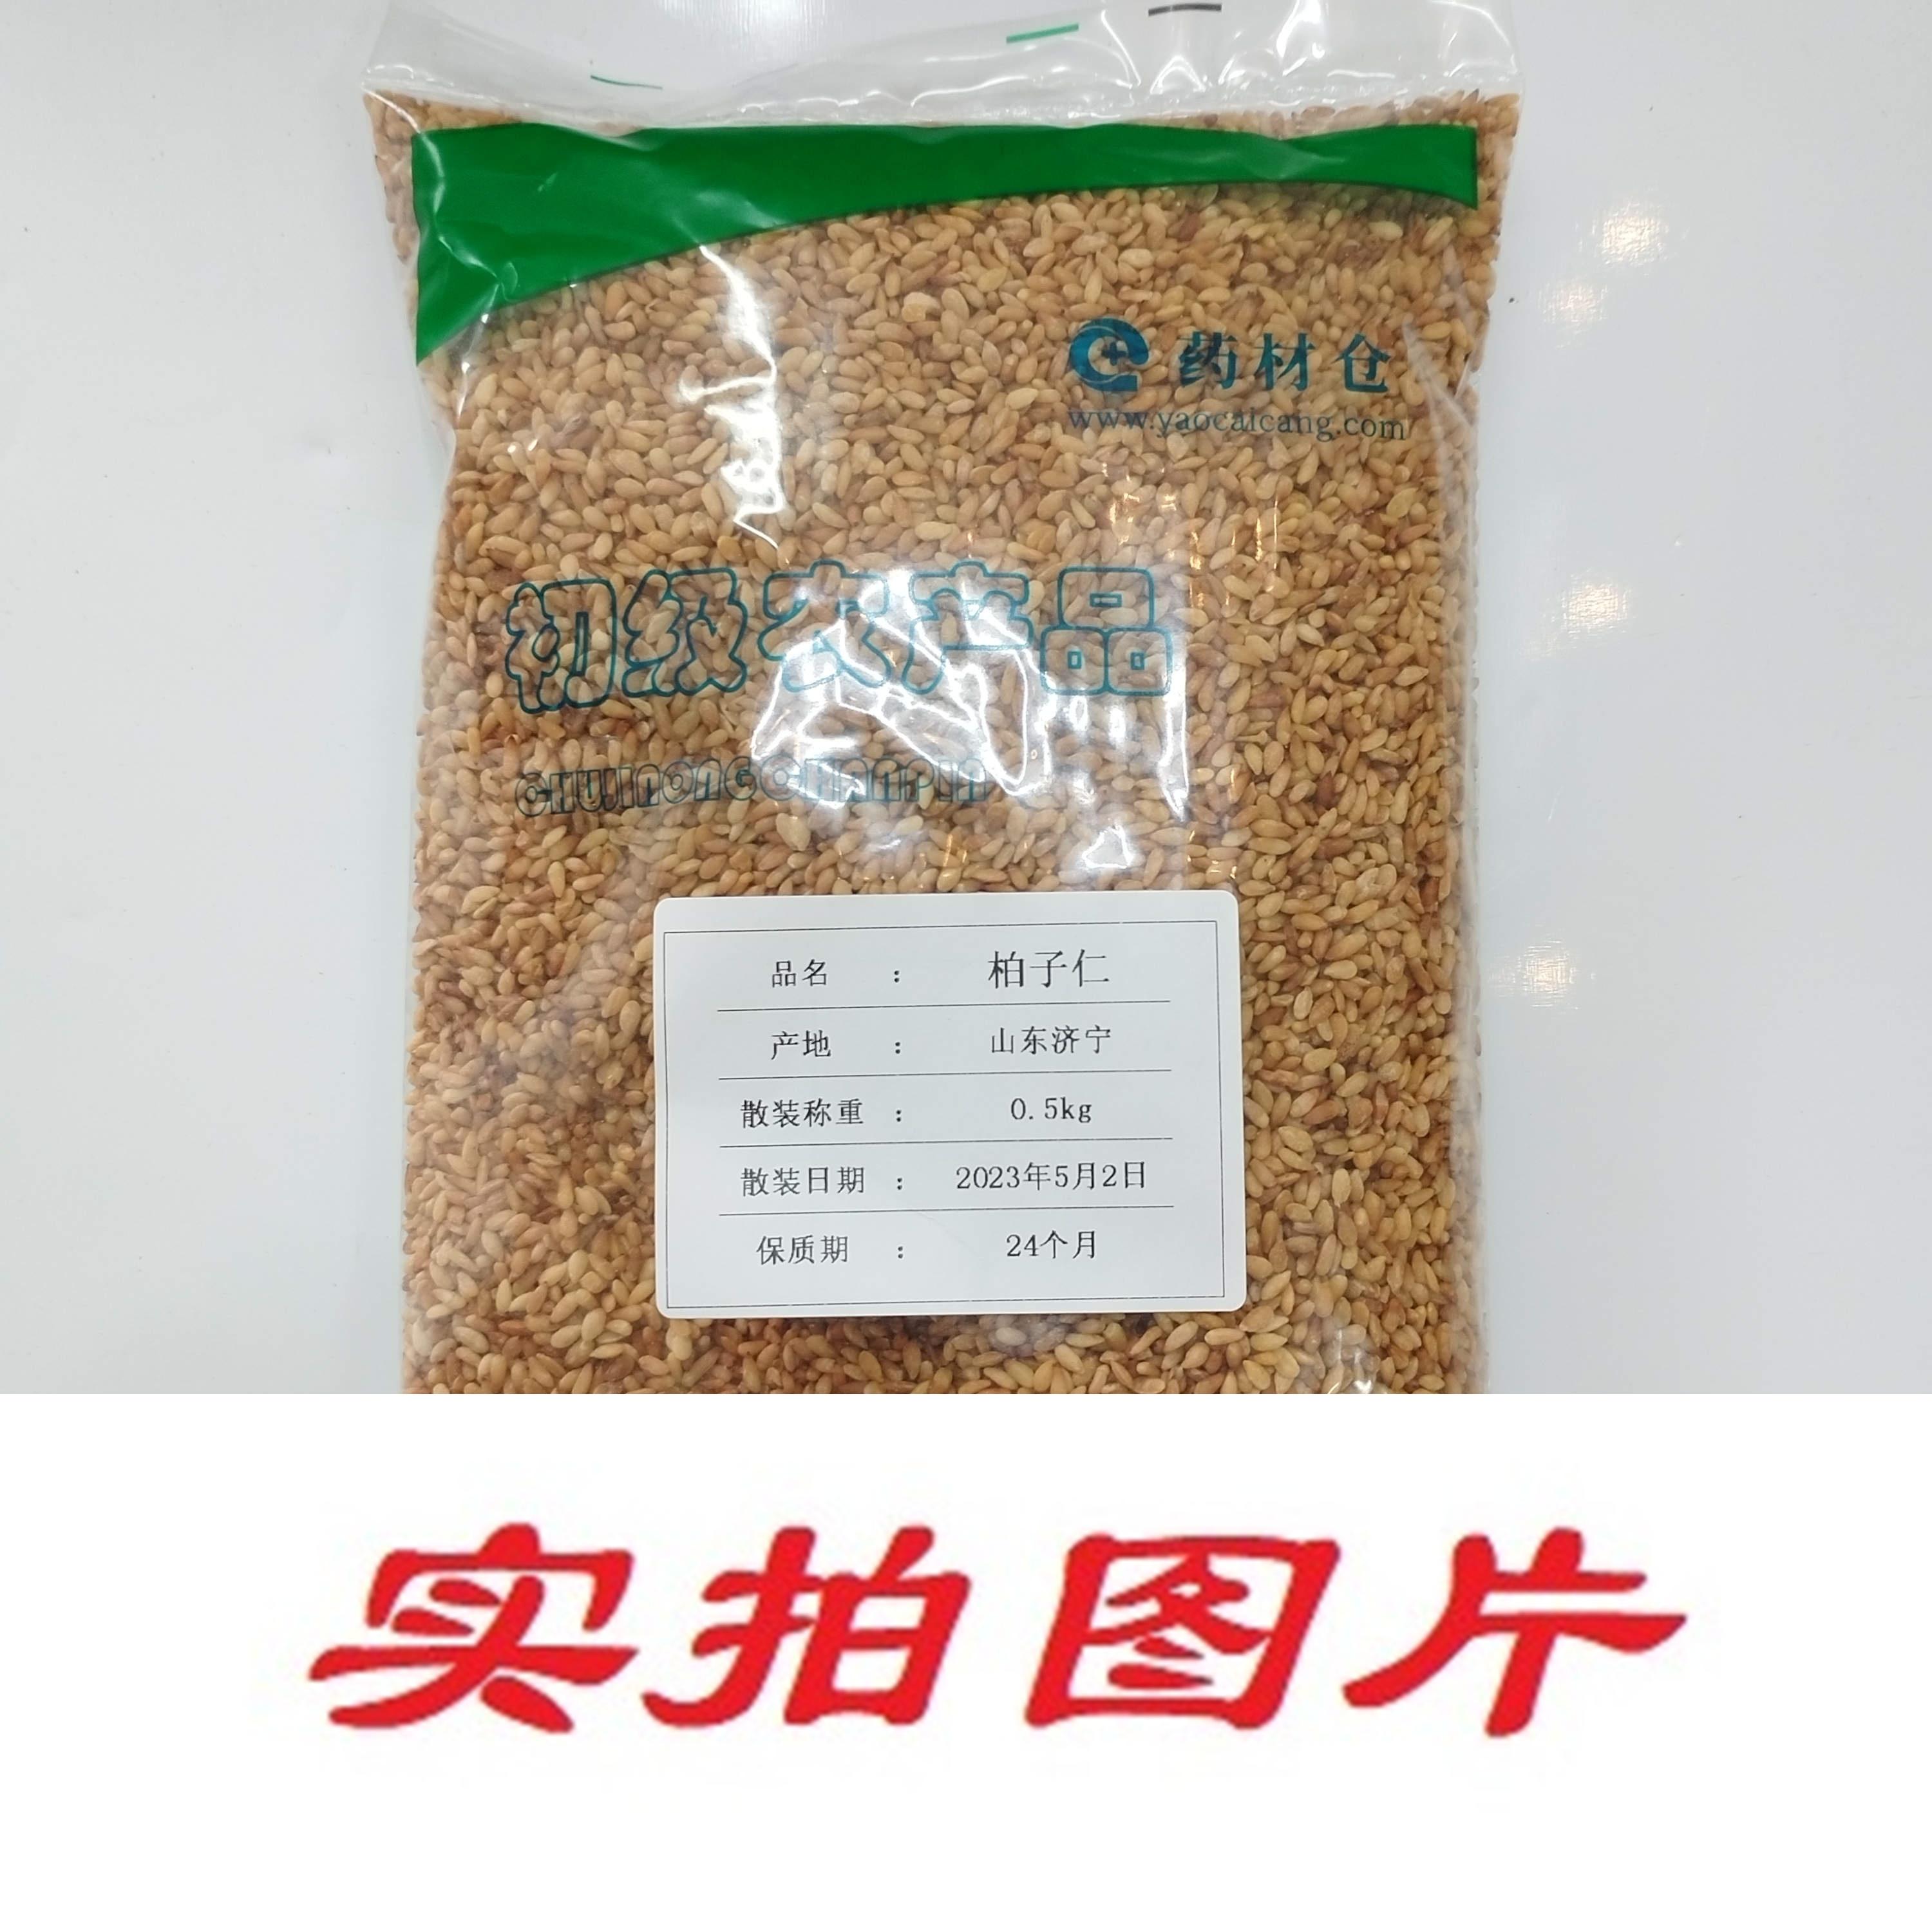 【】柏子仁0.5kg-农副产品